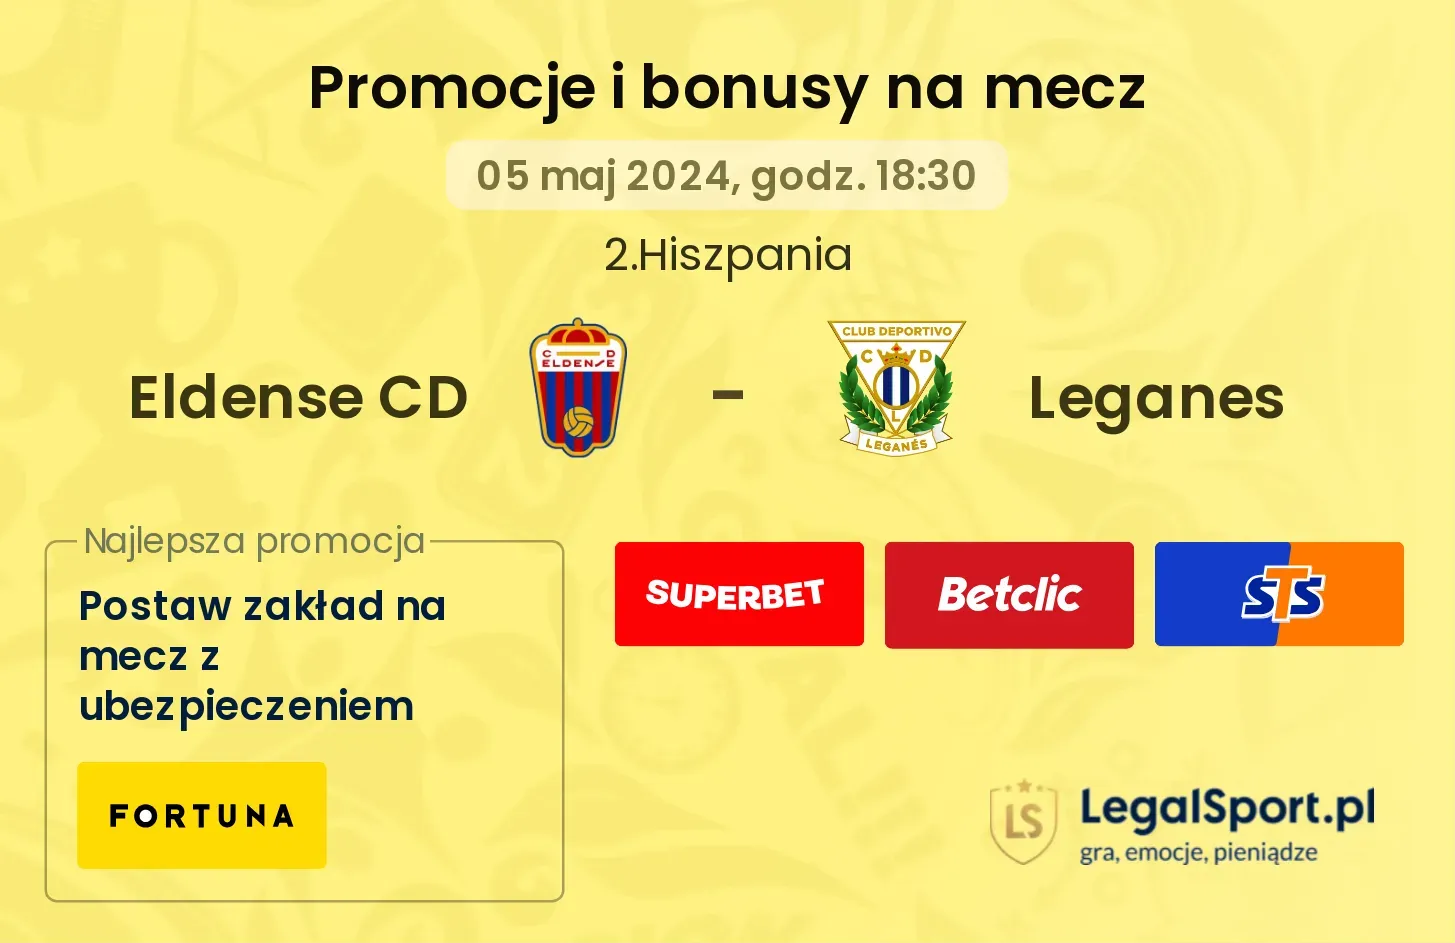 Eldense CD - Leganes promocje bonusy na mecz